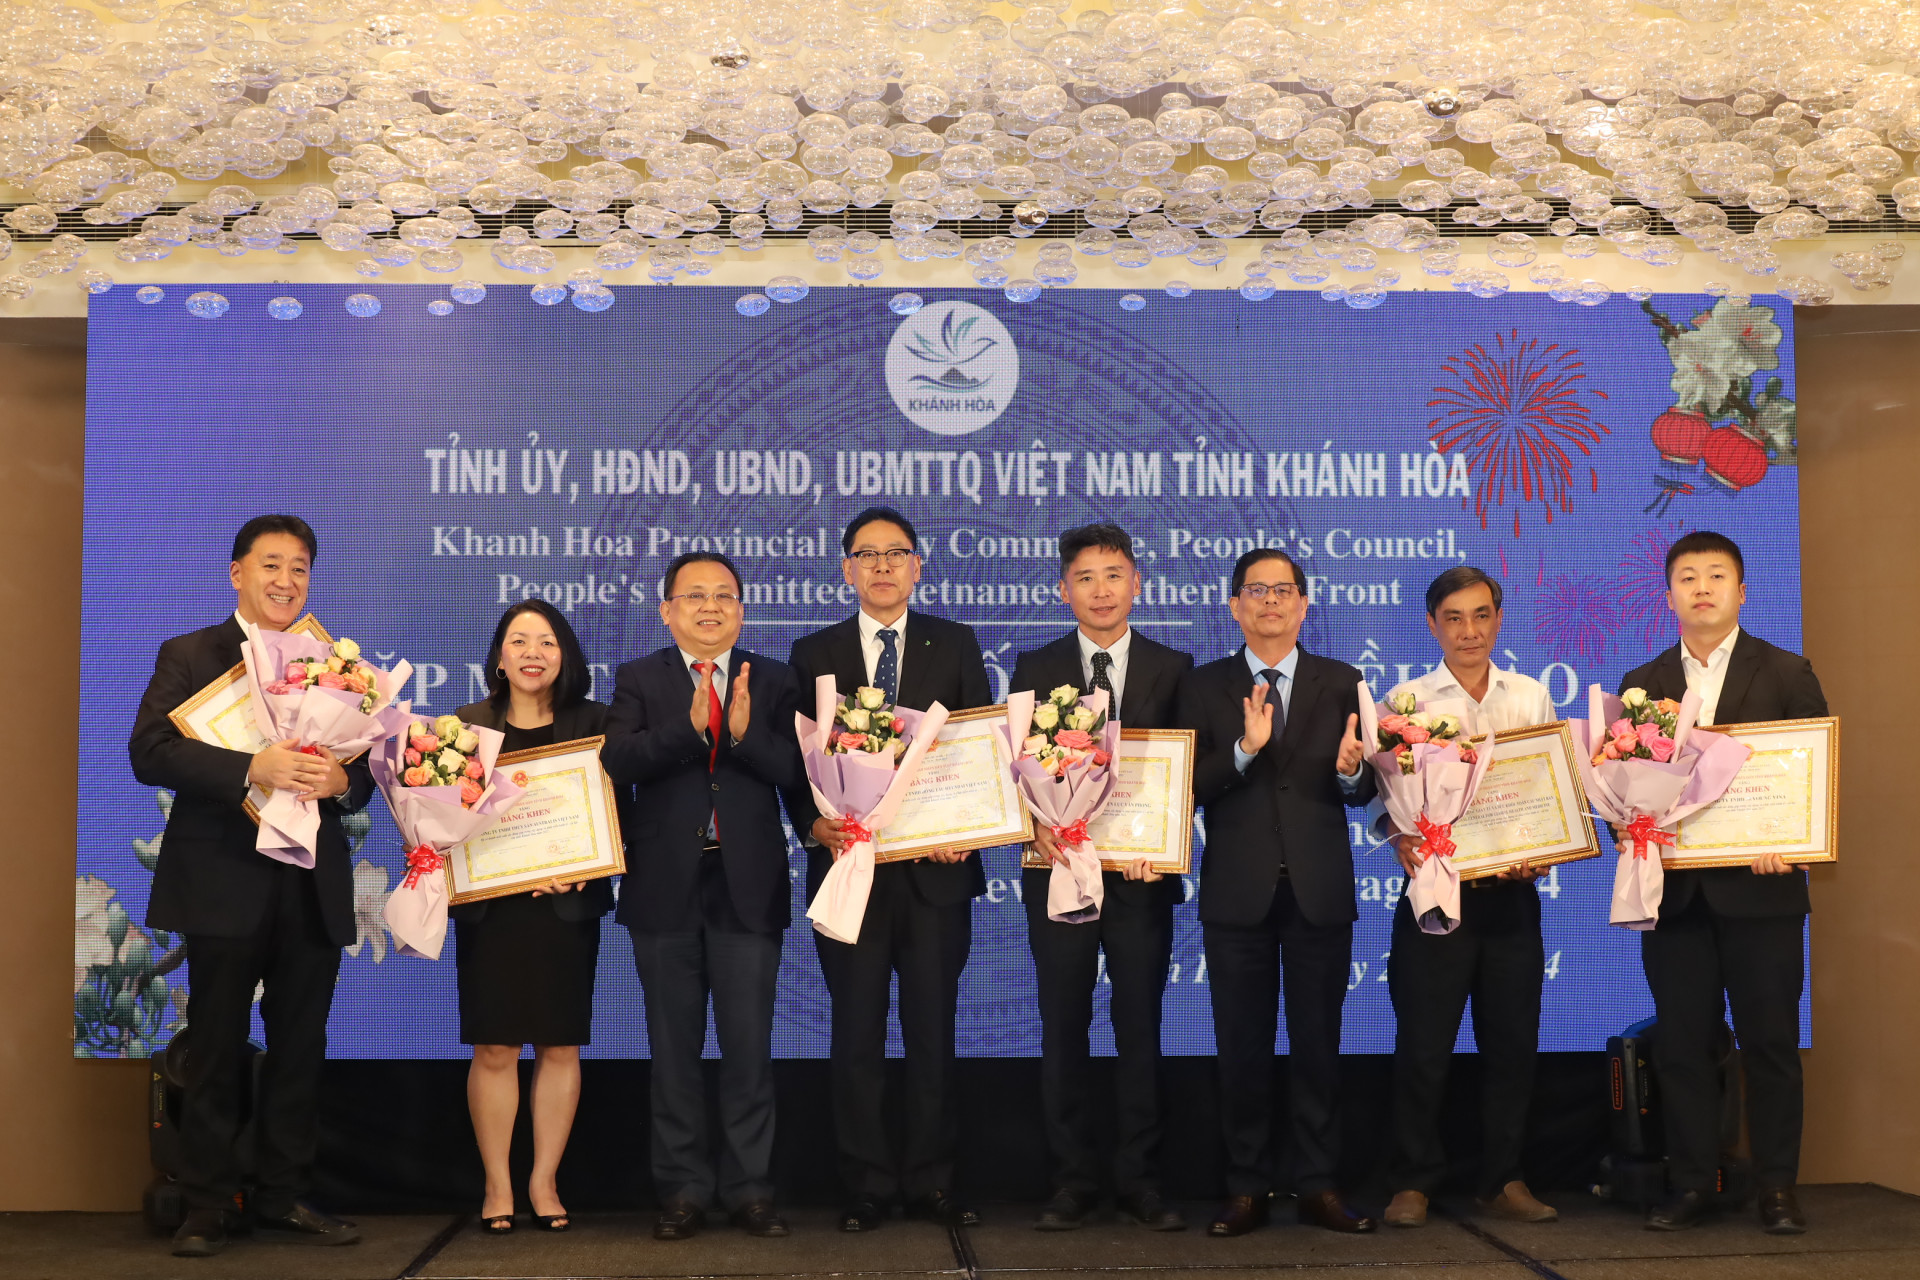 Đồng chí Nguyễn Tấn Tuân và đồng chí Lê Hữu Hoàng trao bằng khen, tặng hoa chúc mừng các tổ chức, doanh nghiệp có thành tích xuất sắc.